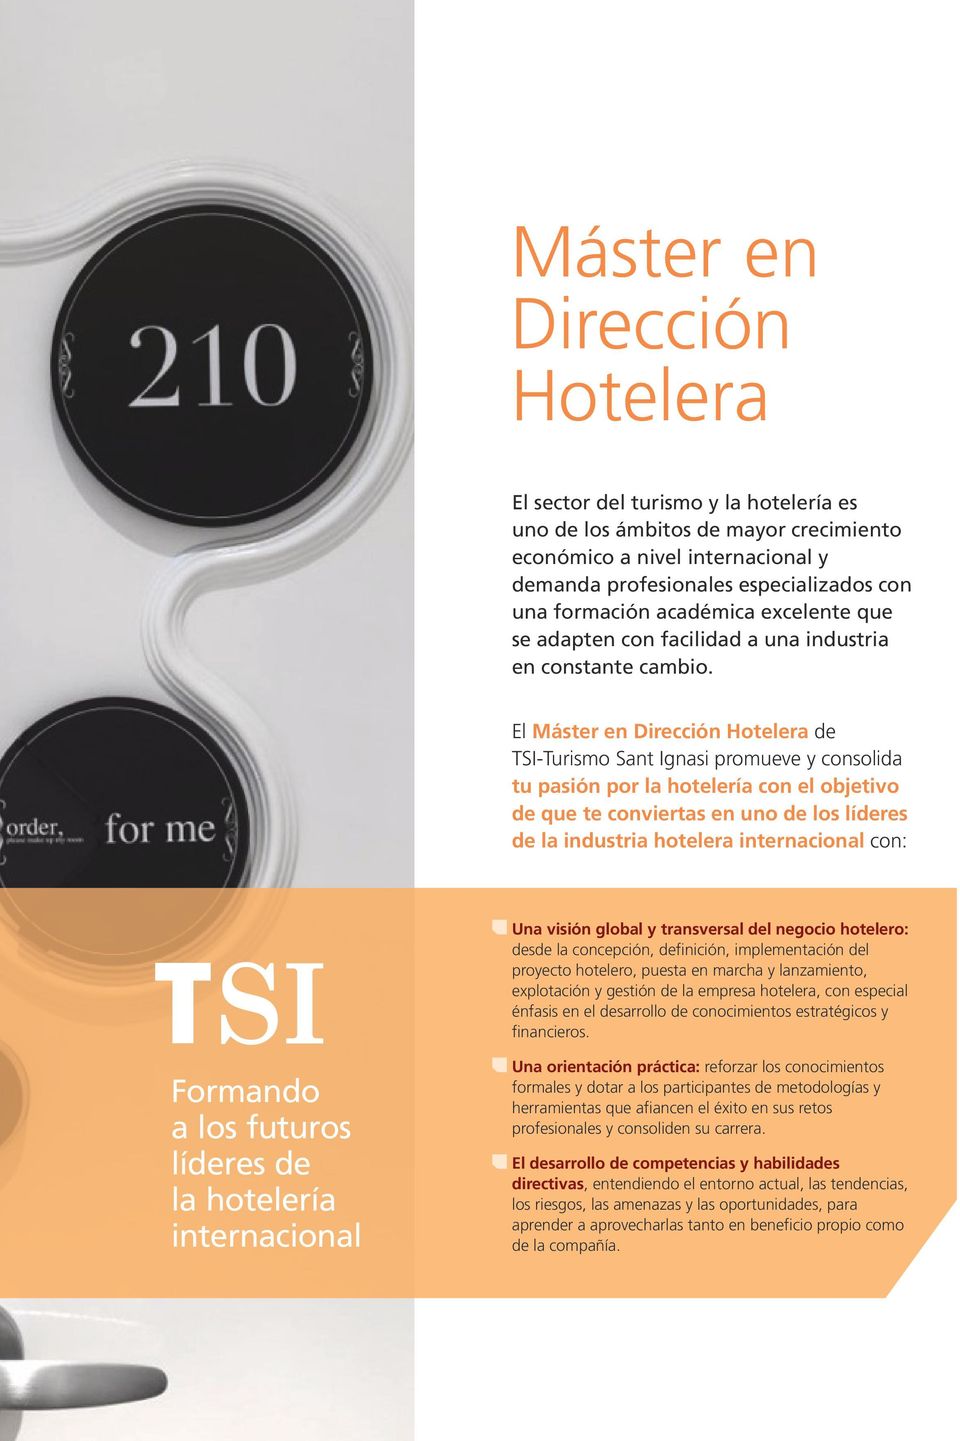 El Máster en Dirección Hotelera de TSI-Turismo Sant Ignasi promueve y consolida tu pasión por la hotelería con el objetivo de que te conviertas en uno de los líderes de la industria hotelera